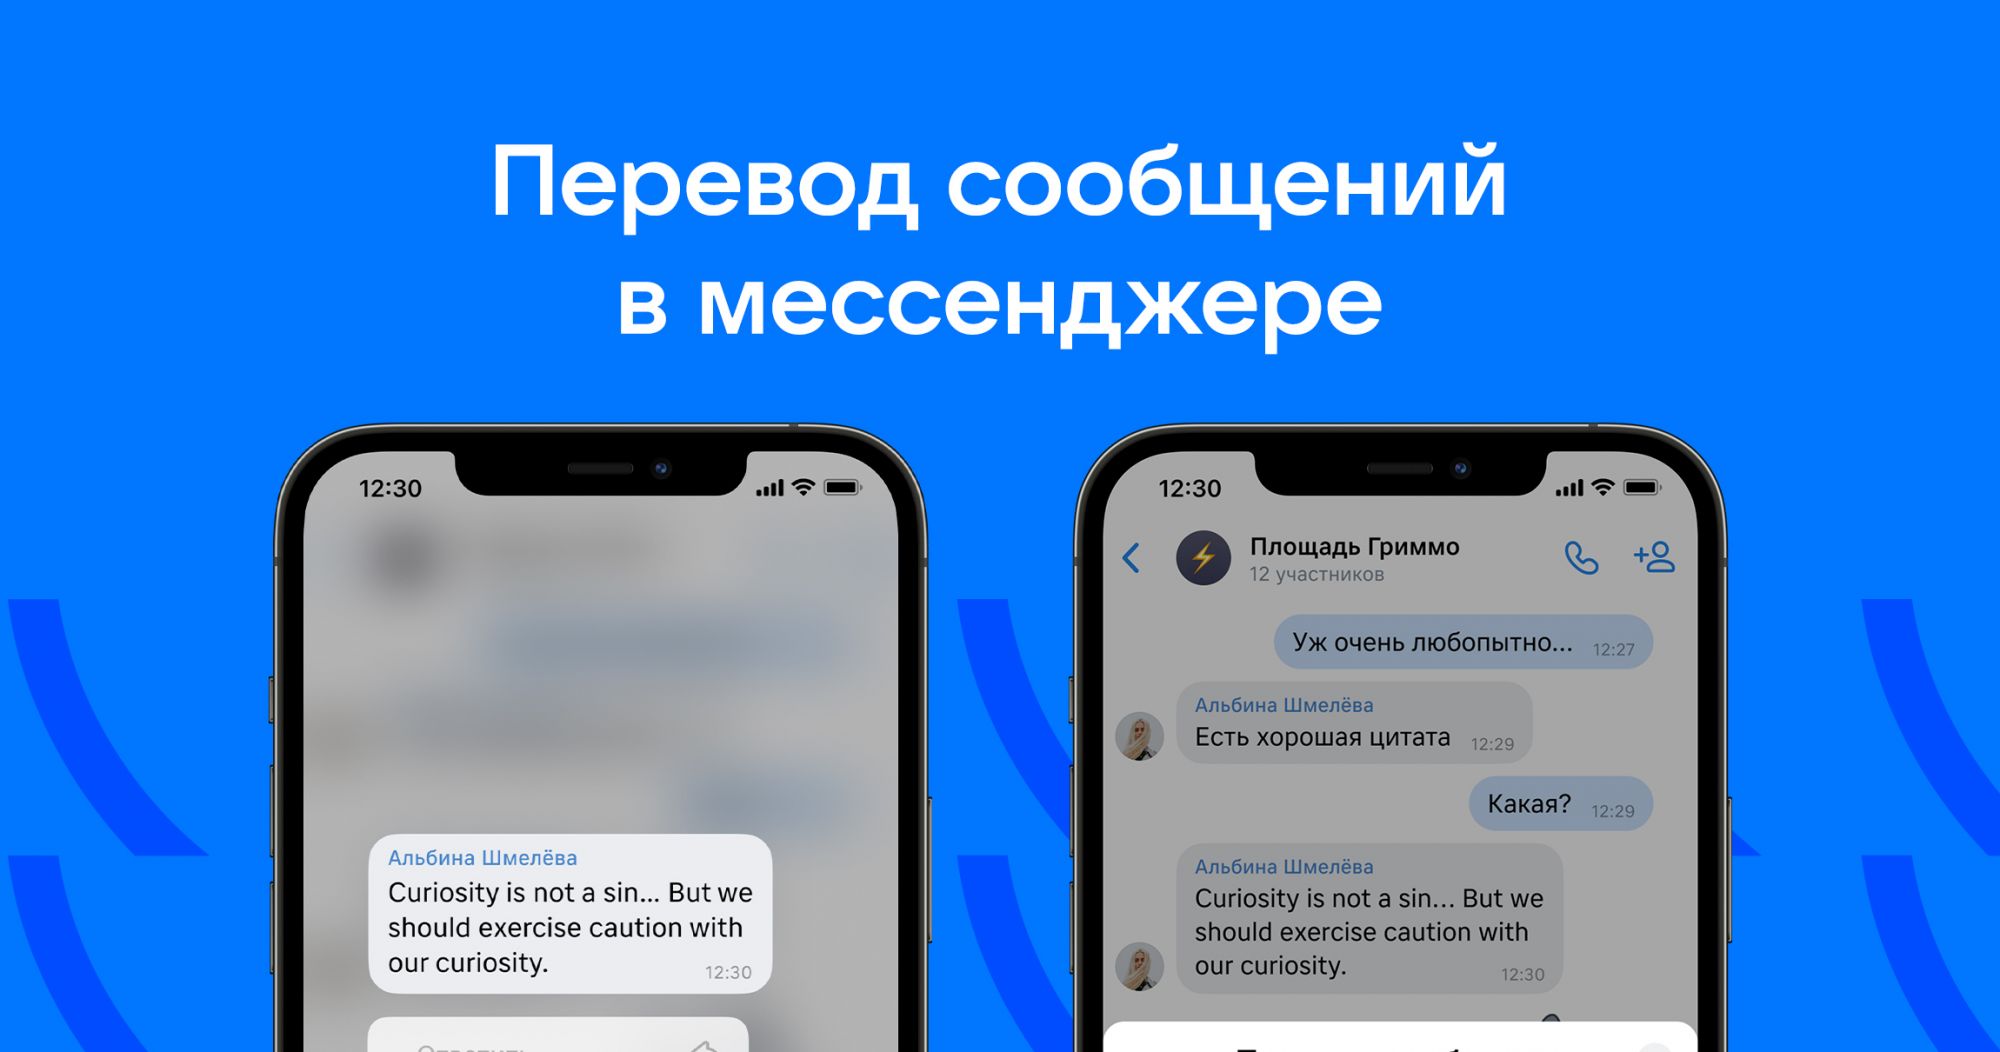 ВКонтакте запустил перевод